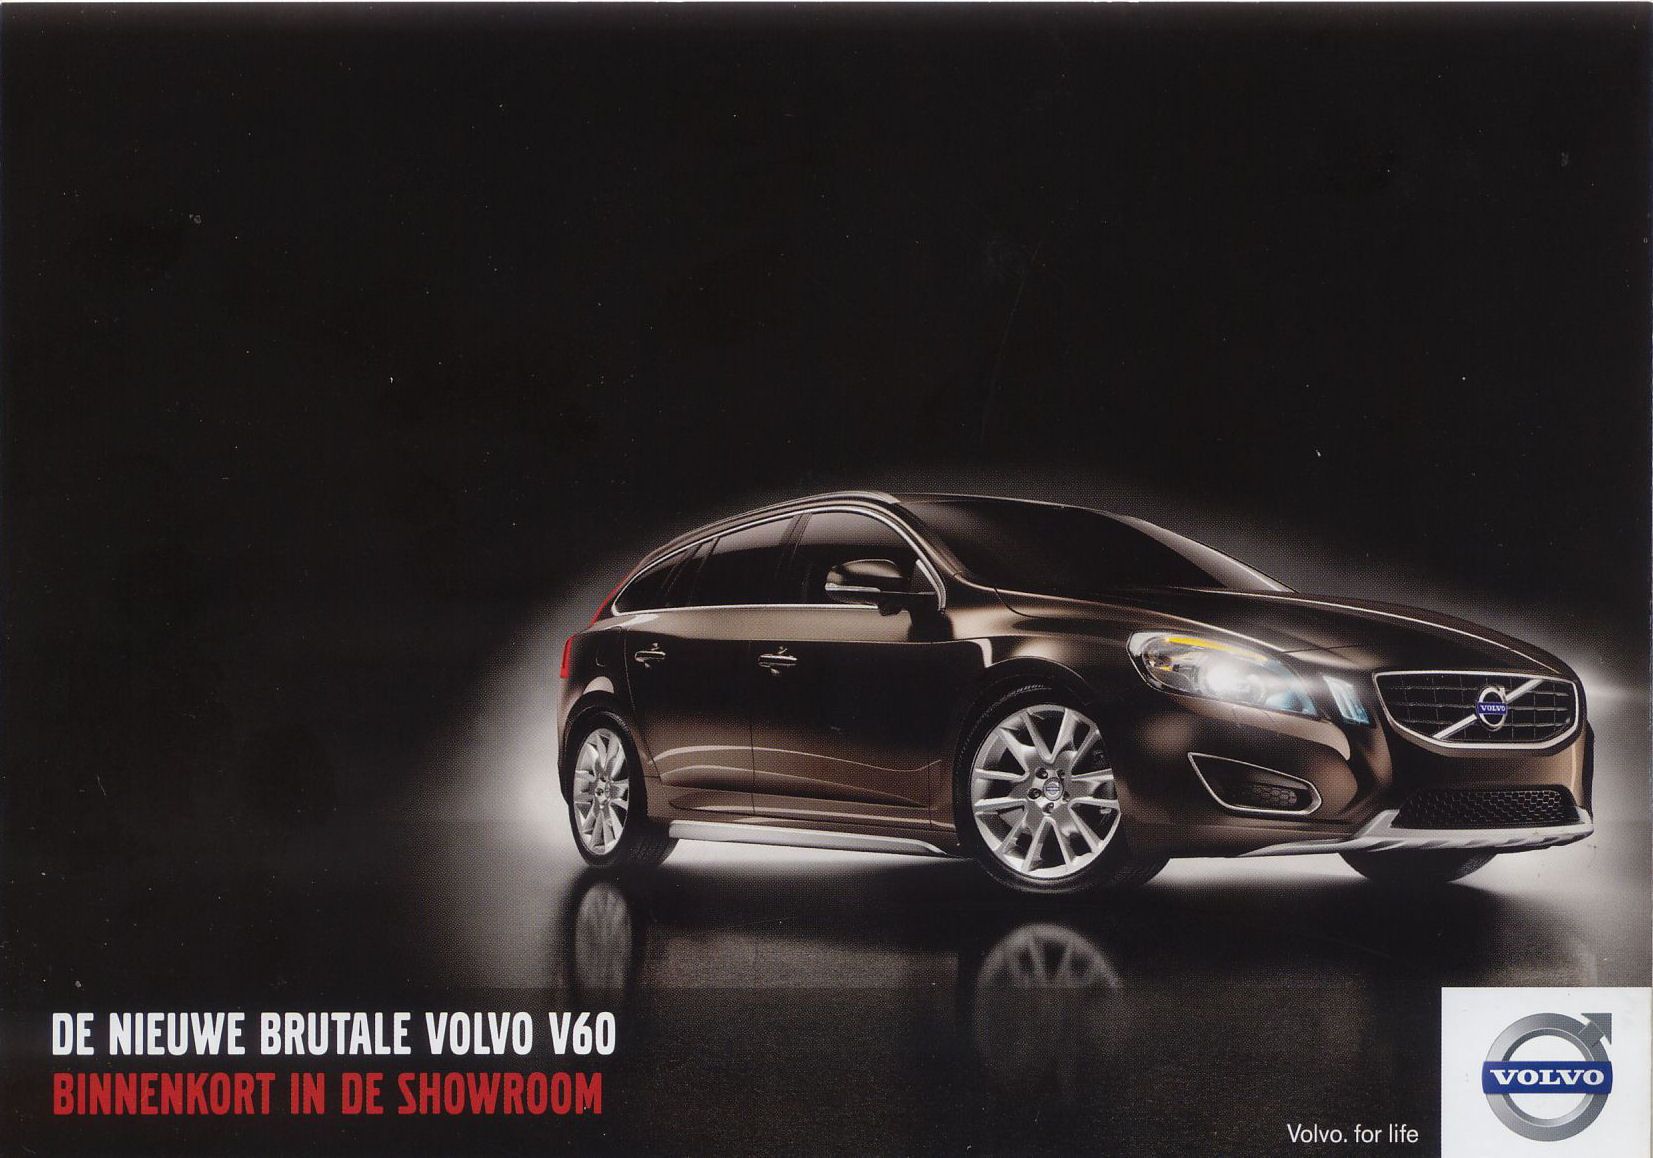 2010 Volvo V60 brochure